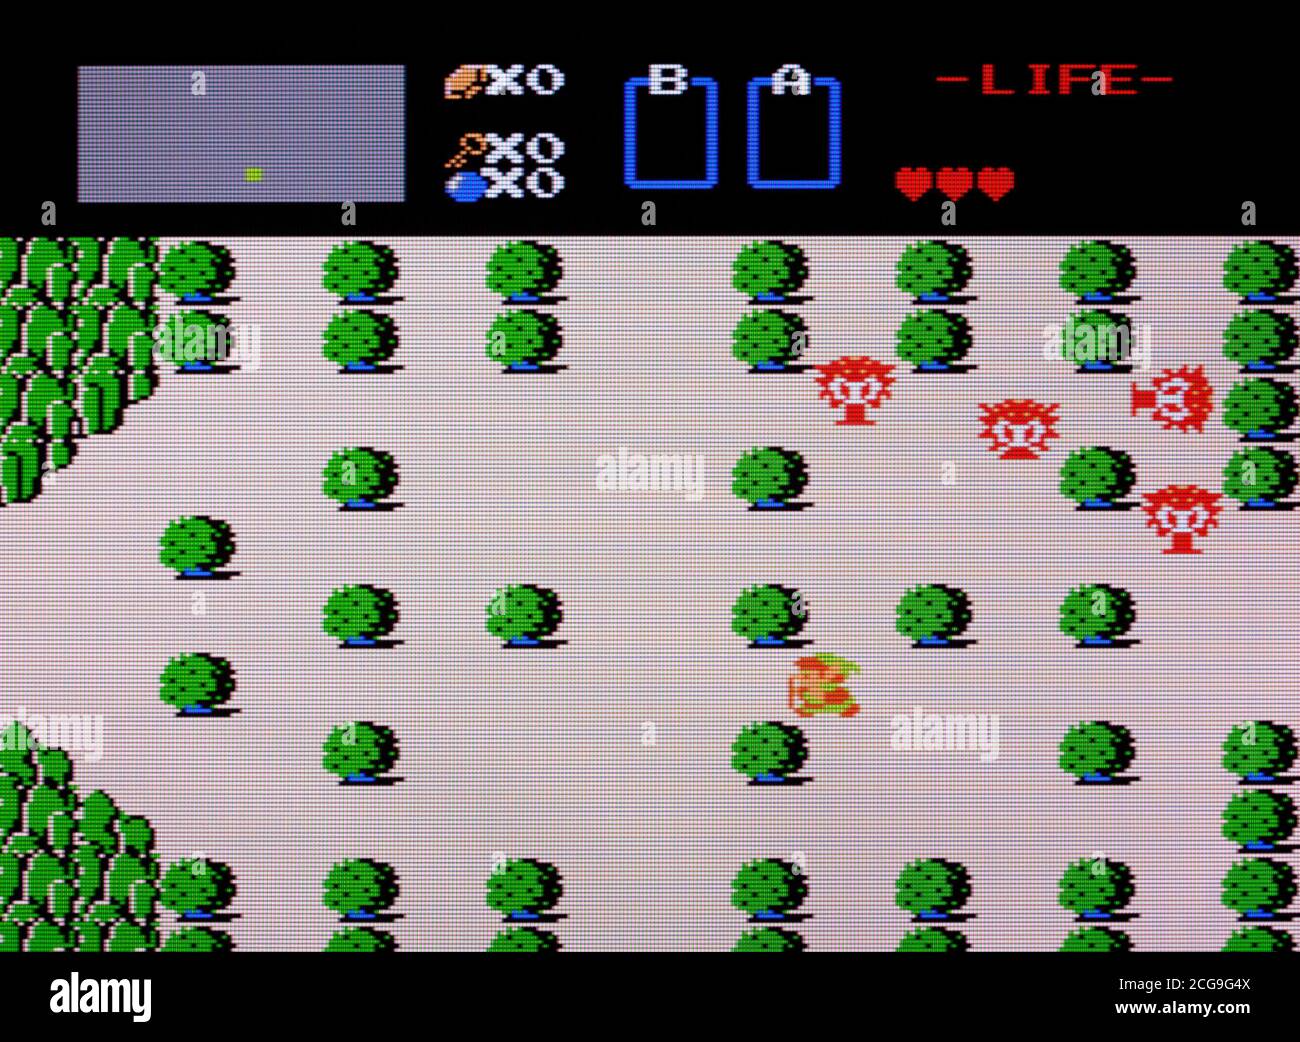 La légende de Zelda - Nintendo Entertainment System - NES Jeu vidéo - usage éditorial uniquement Banque D'Images